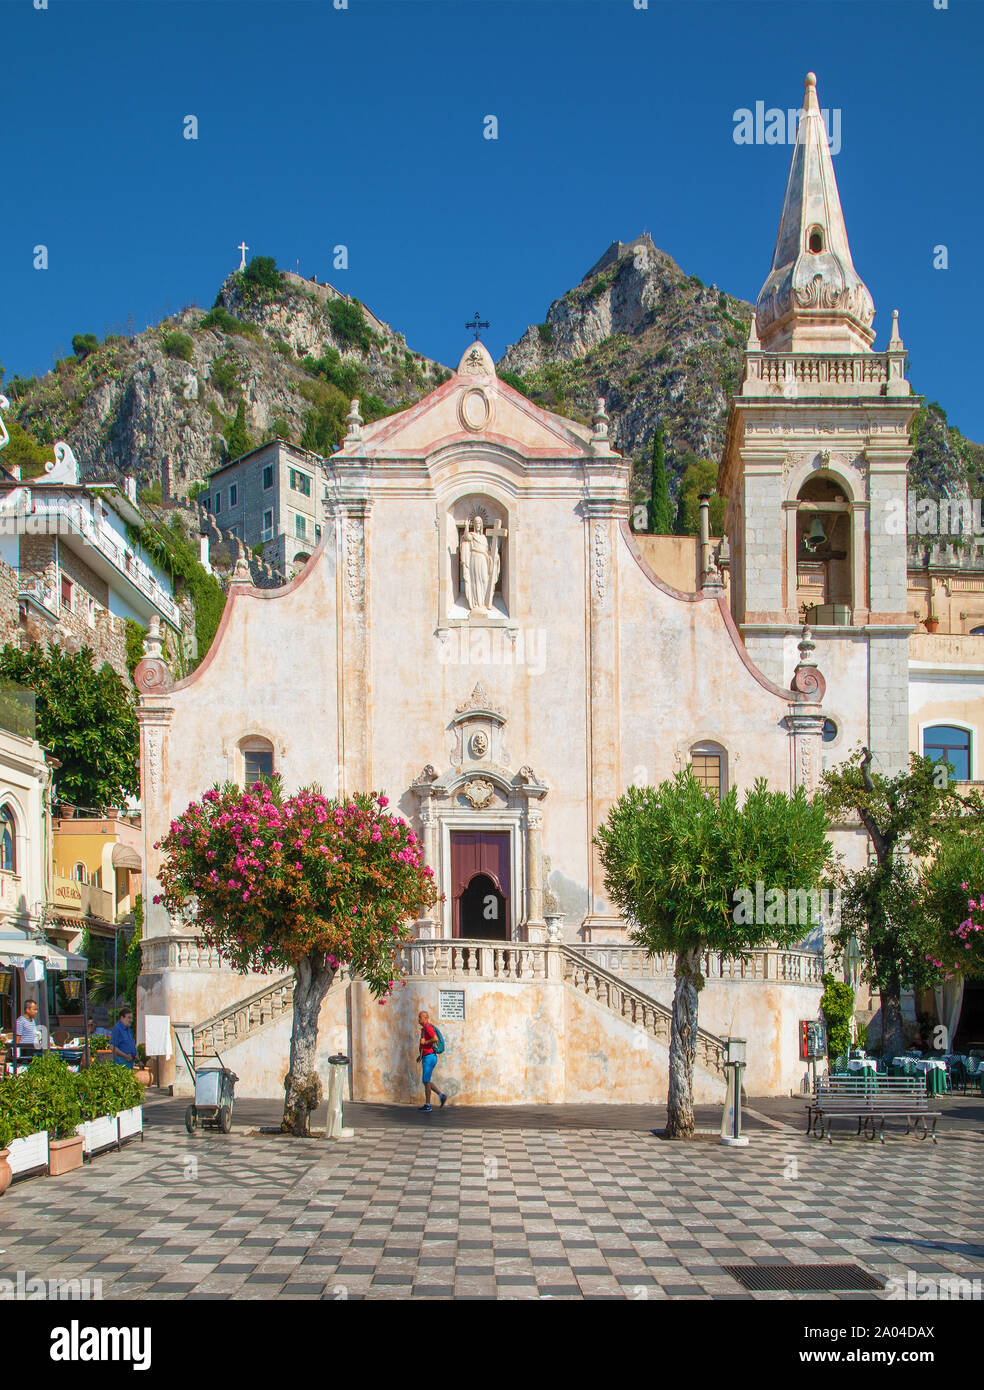 Small church in Taormina, Sicily Stock Photo